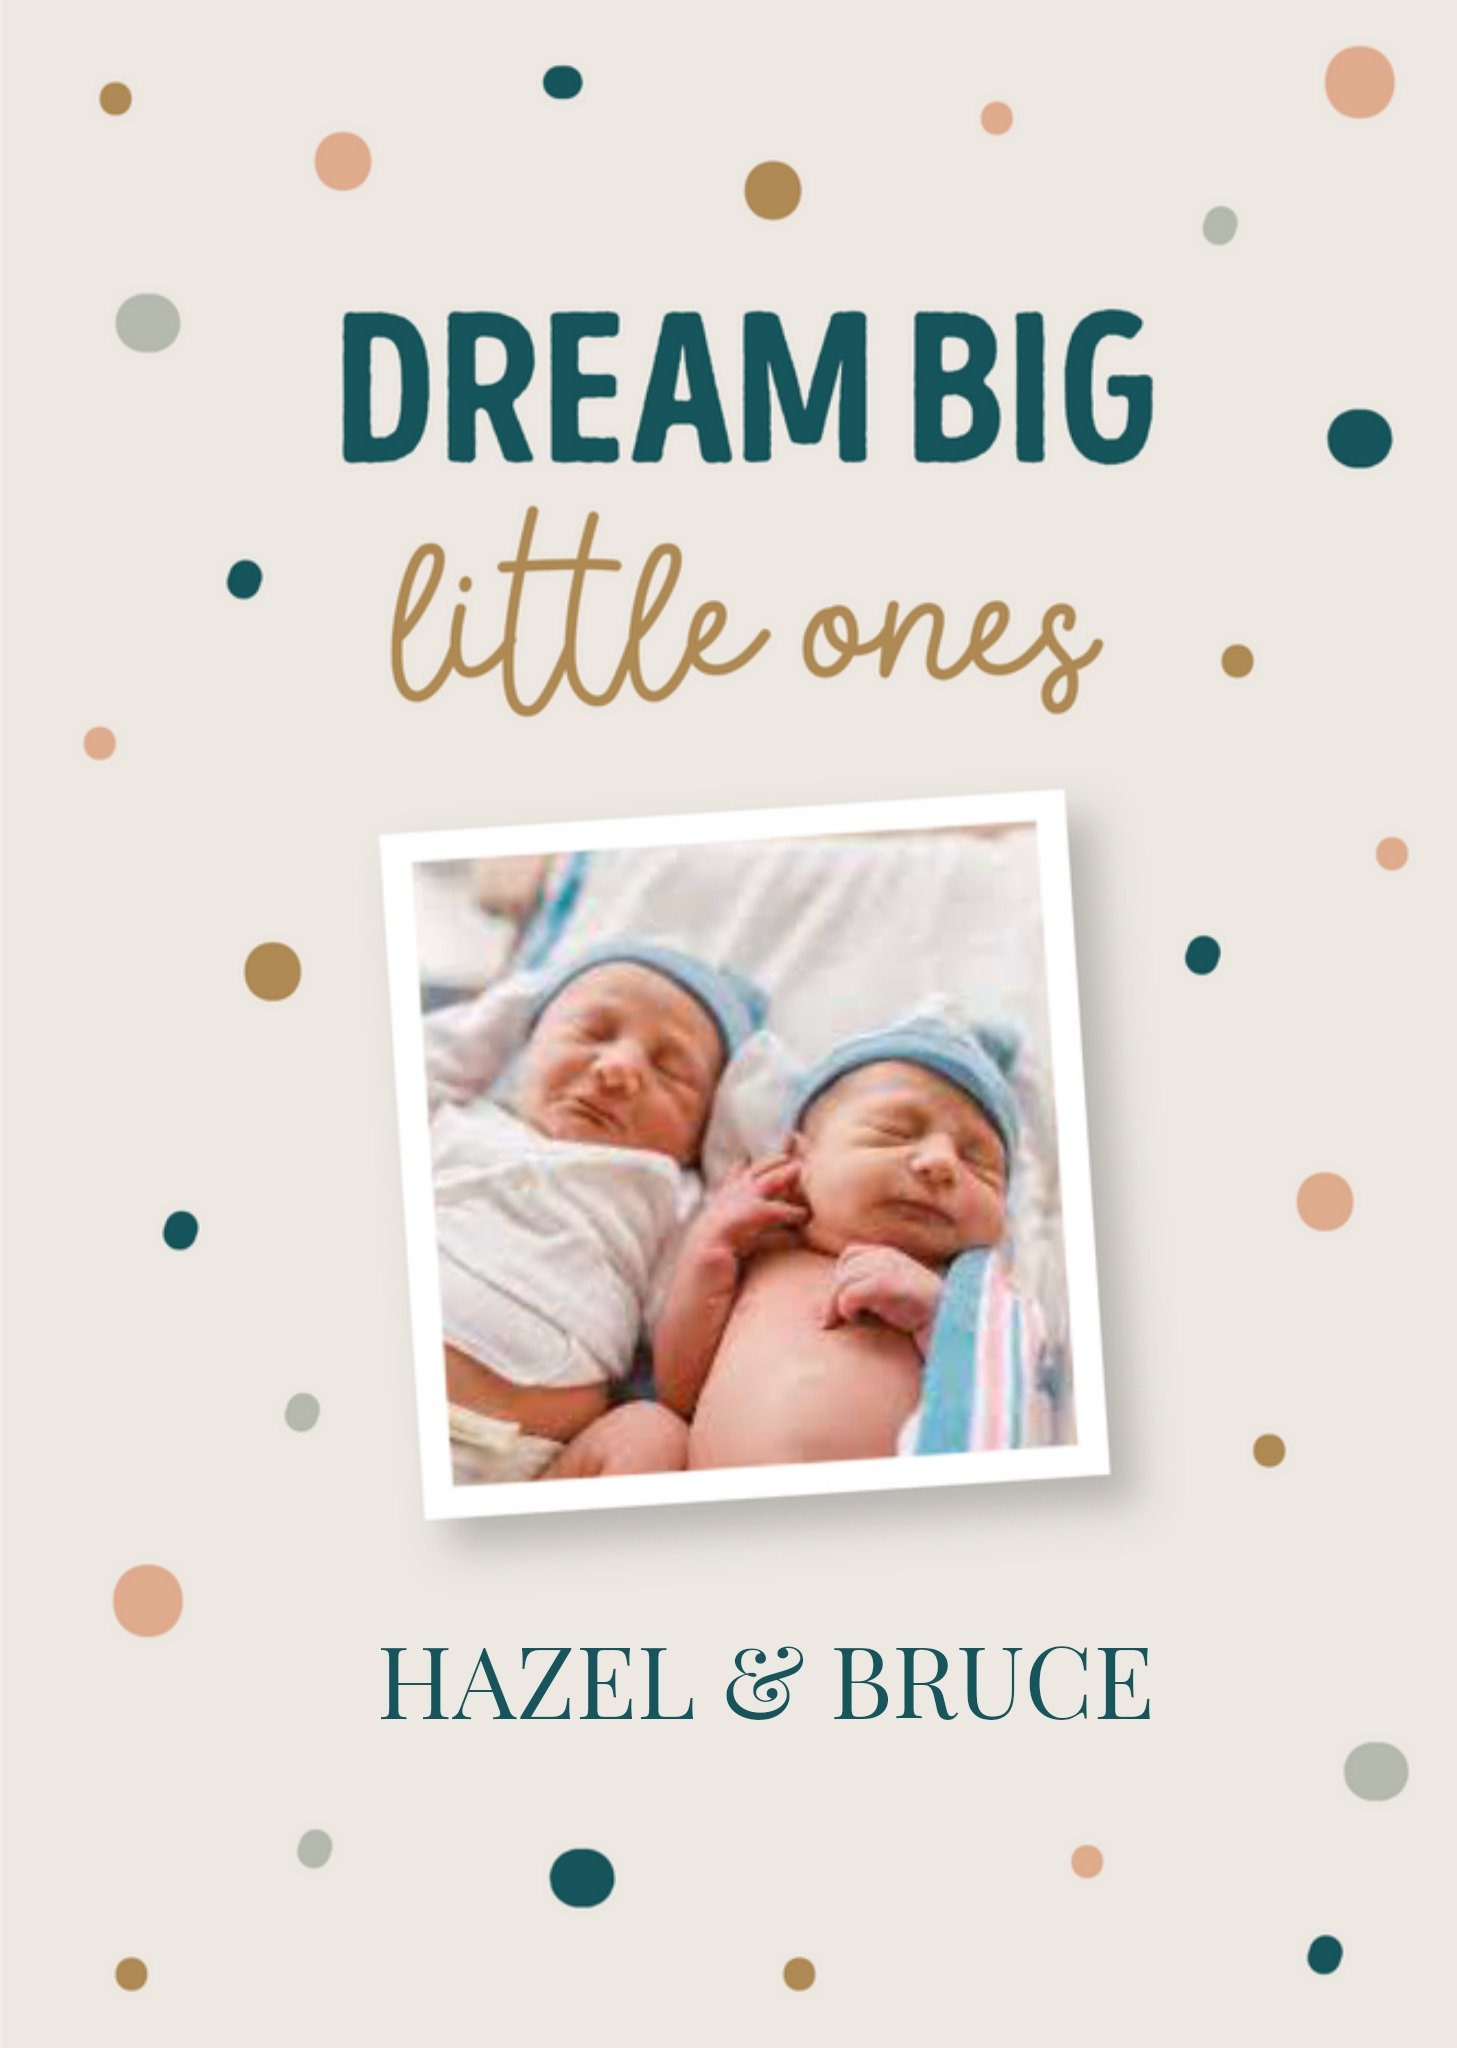 Papercute - Geboortekaart - Dream Big - Tweeling